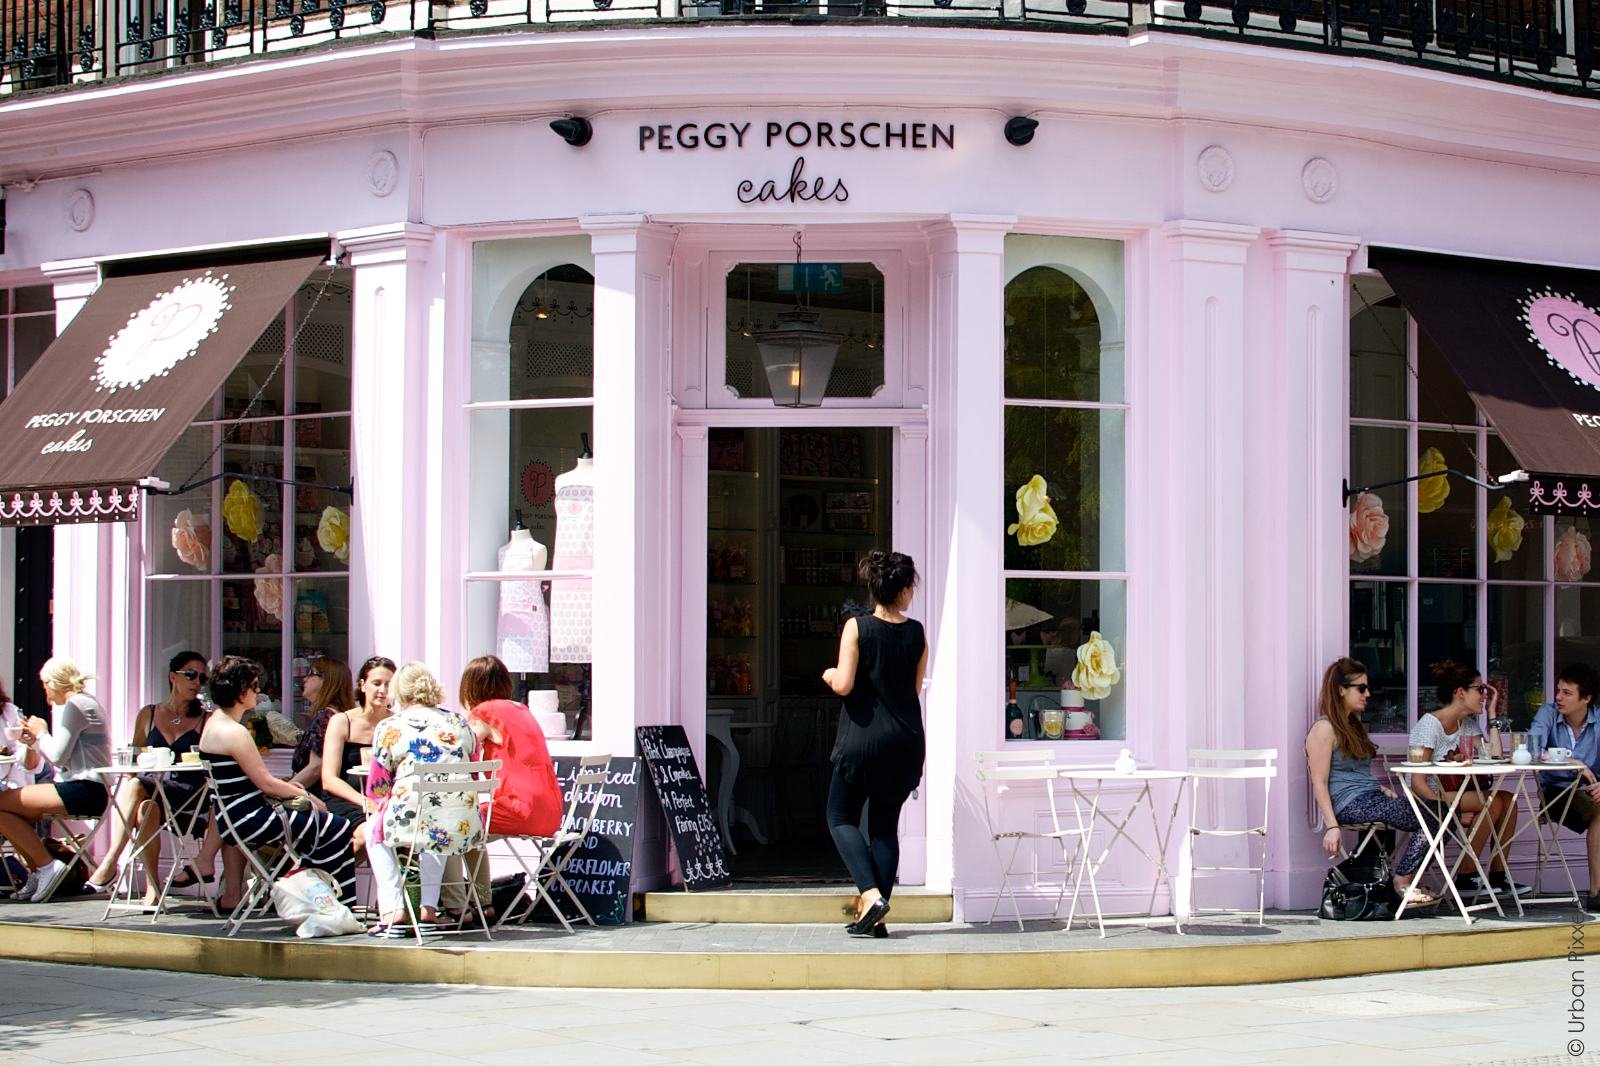 Peggy Porschen Parlour in London